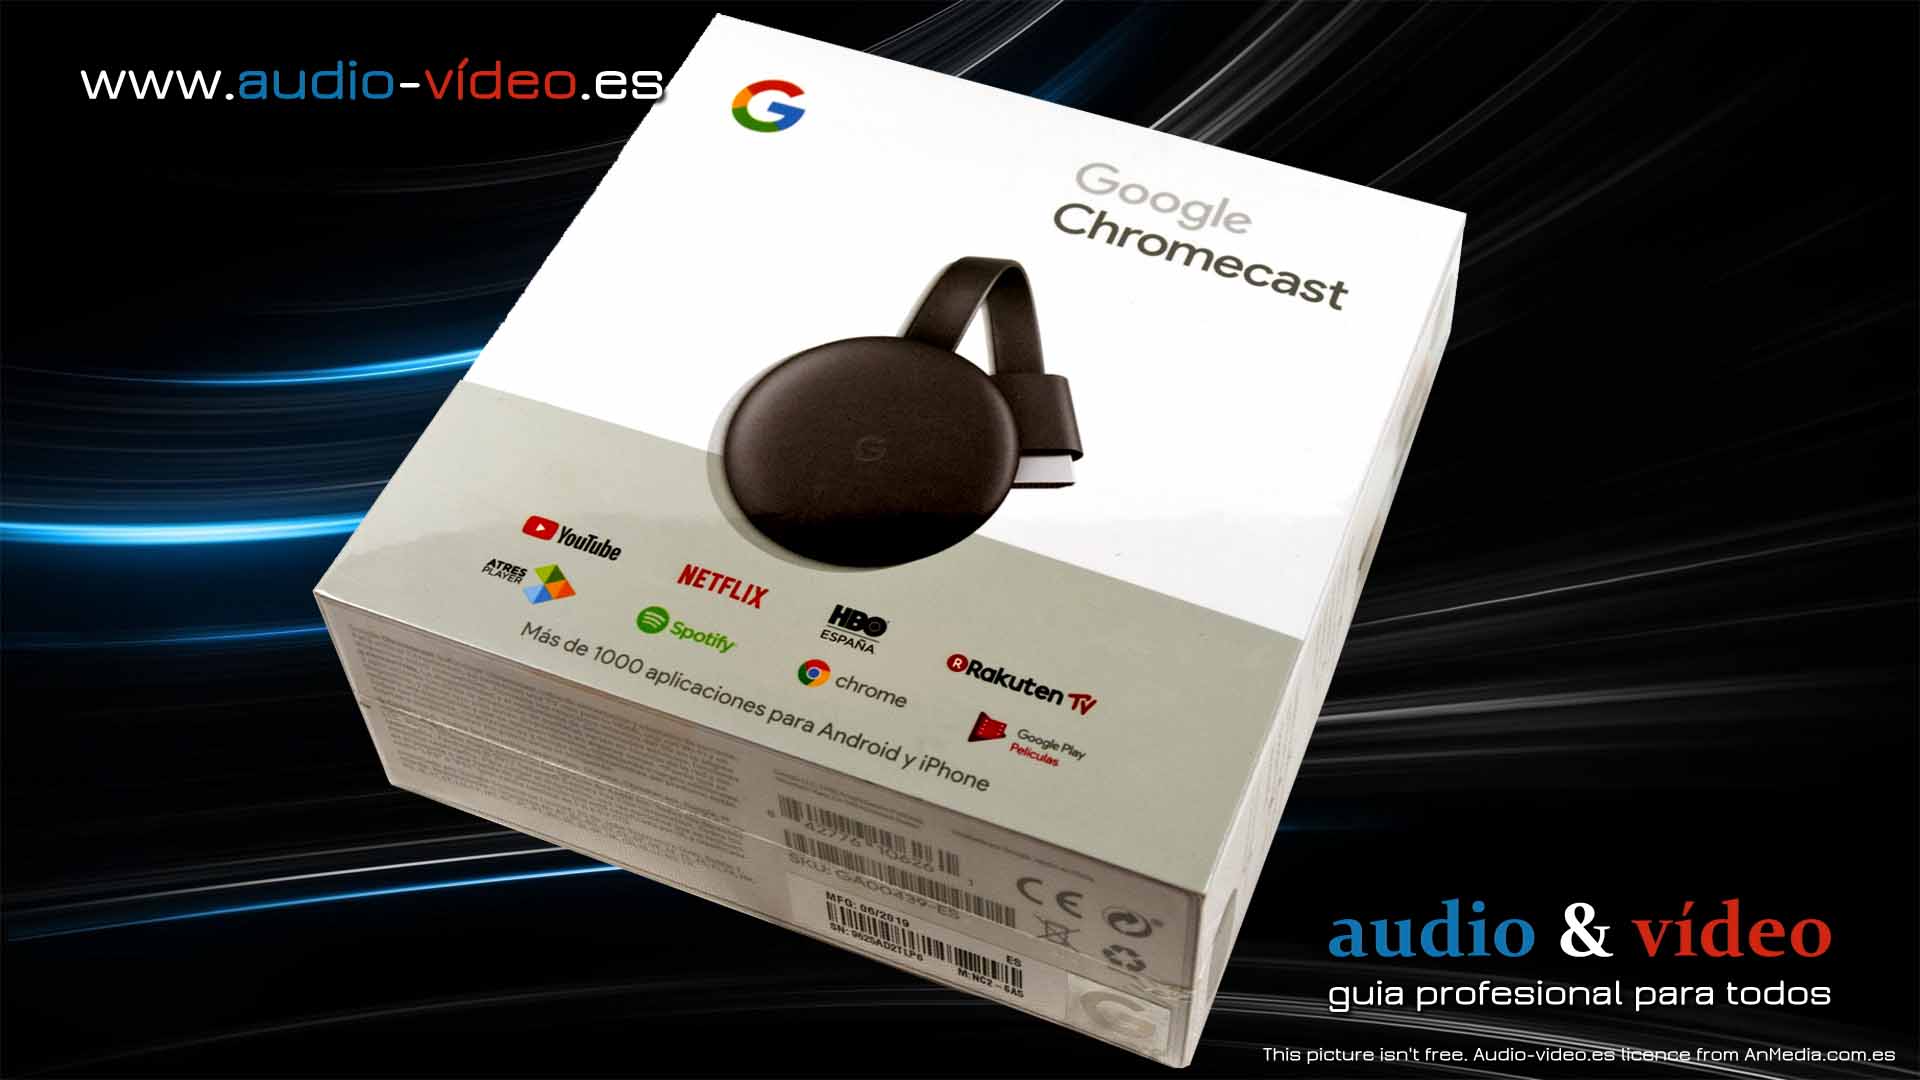 ▶️ Google Chromecast NC2-6A5 - paso a paso configuración básica / análisis / banco de pruebas / parte 1